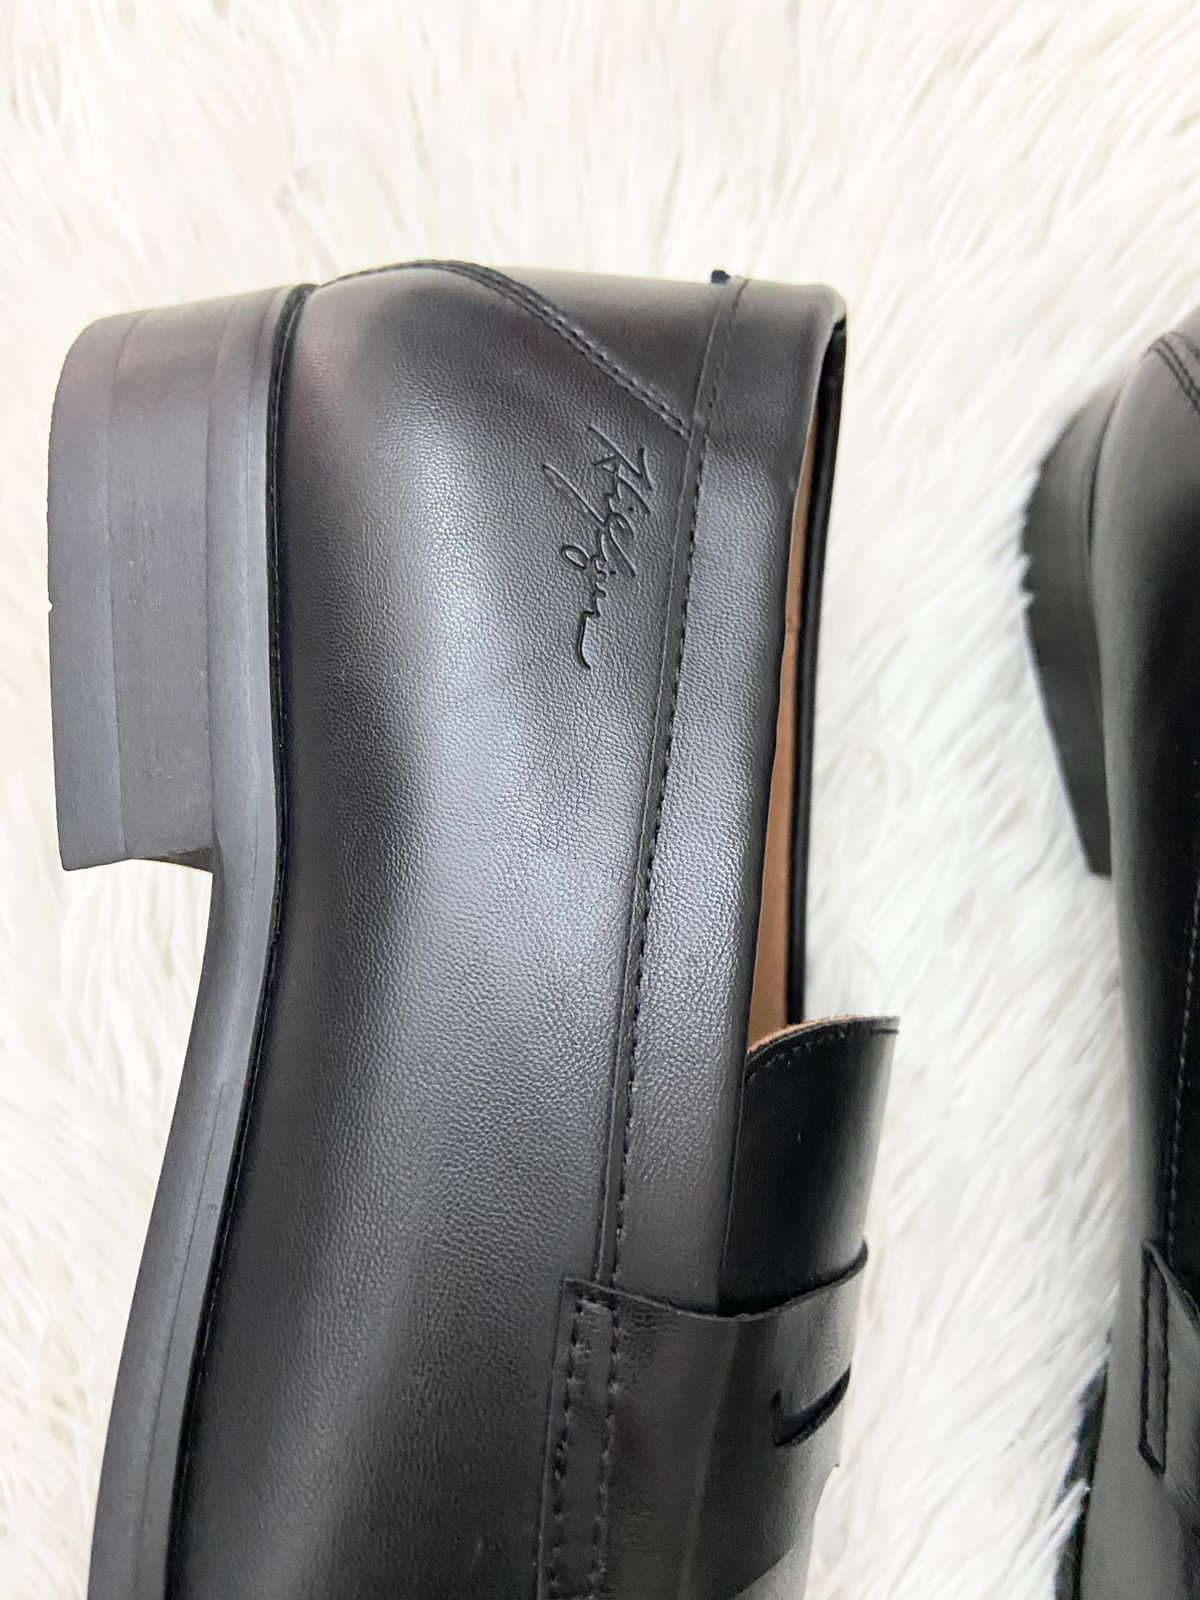 Zapatos TOMMY HILFIGER original, negros lisos con punta y pequeño logotipo de la marca en la parte de atrás.